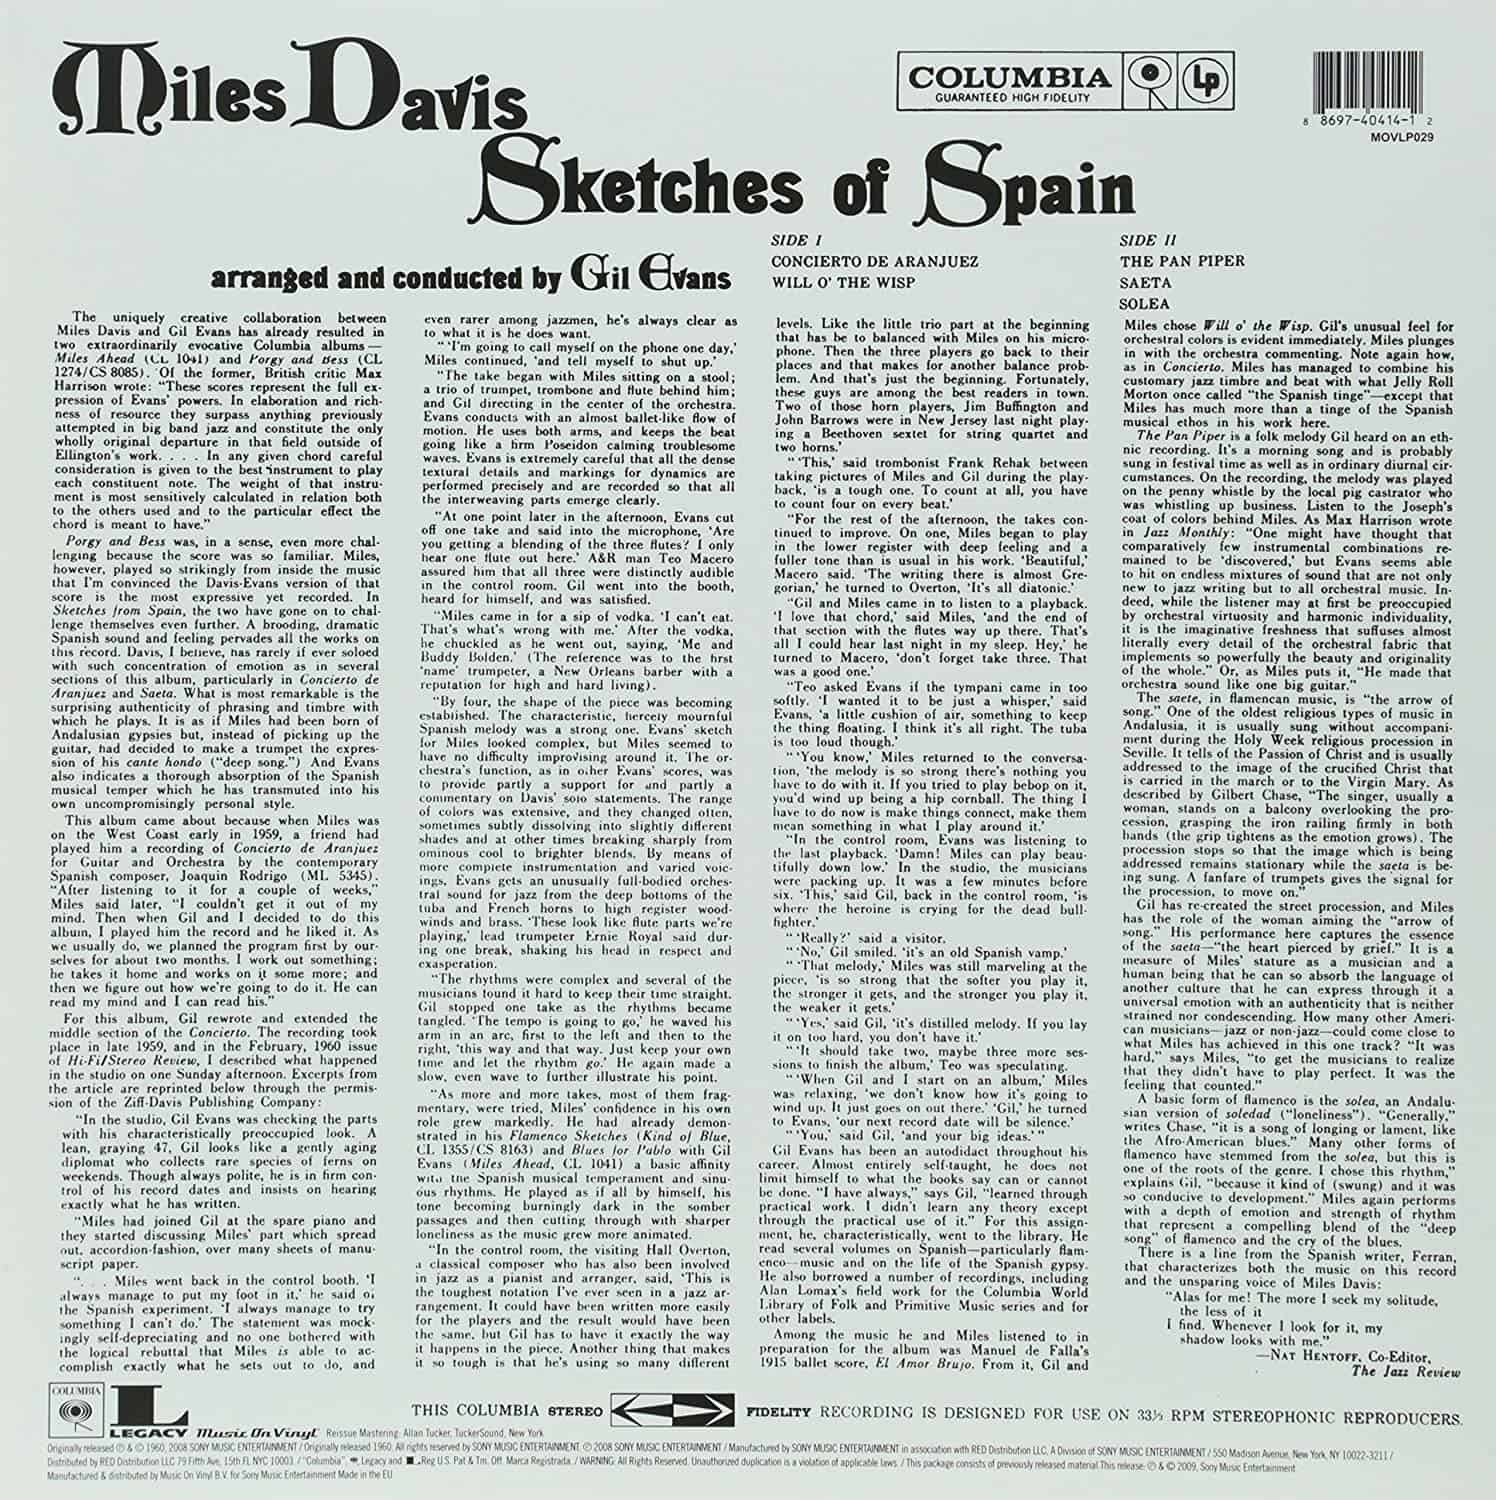 Miles-Davis-Sketches-Of-Spain-LP-vinyl-record-album-back